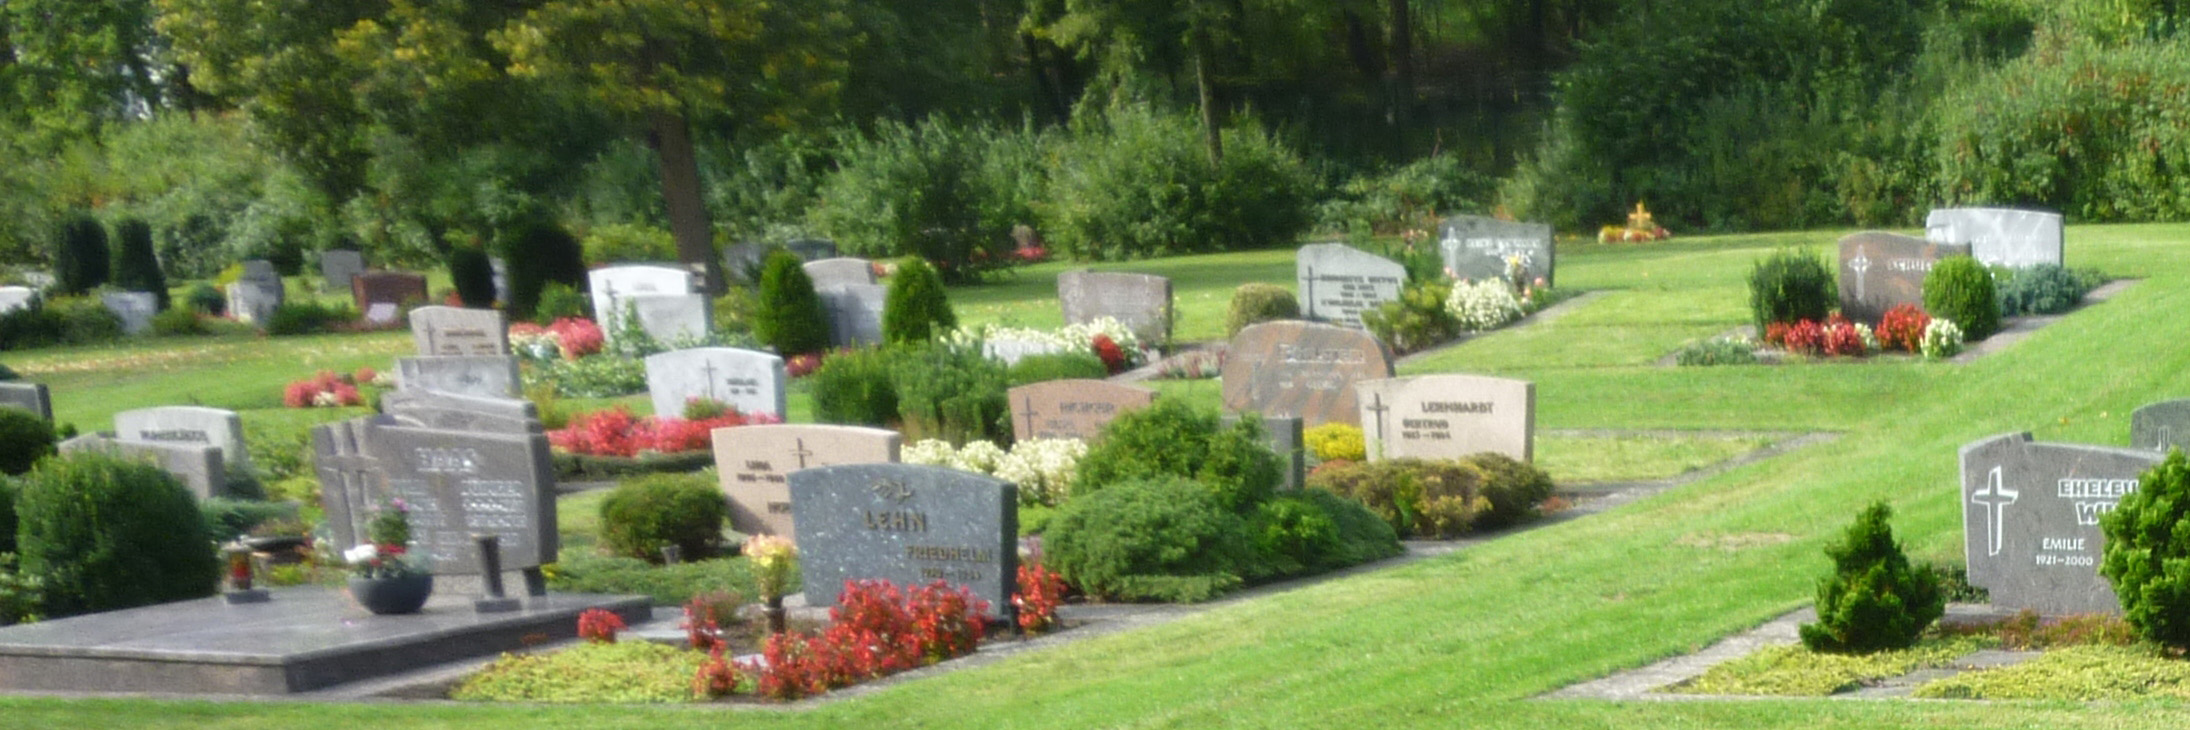 Friedhof_Sinn